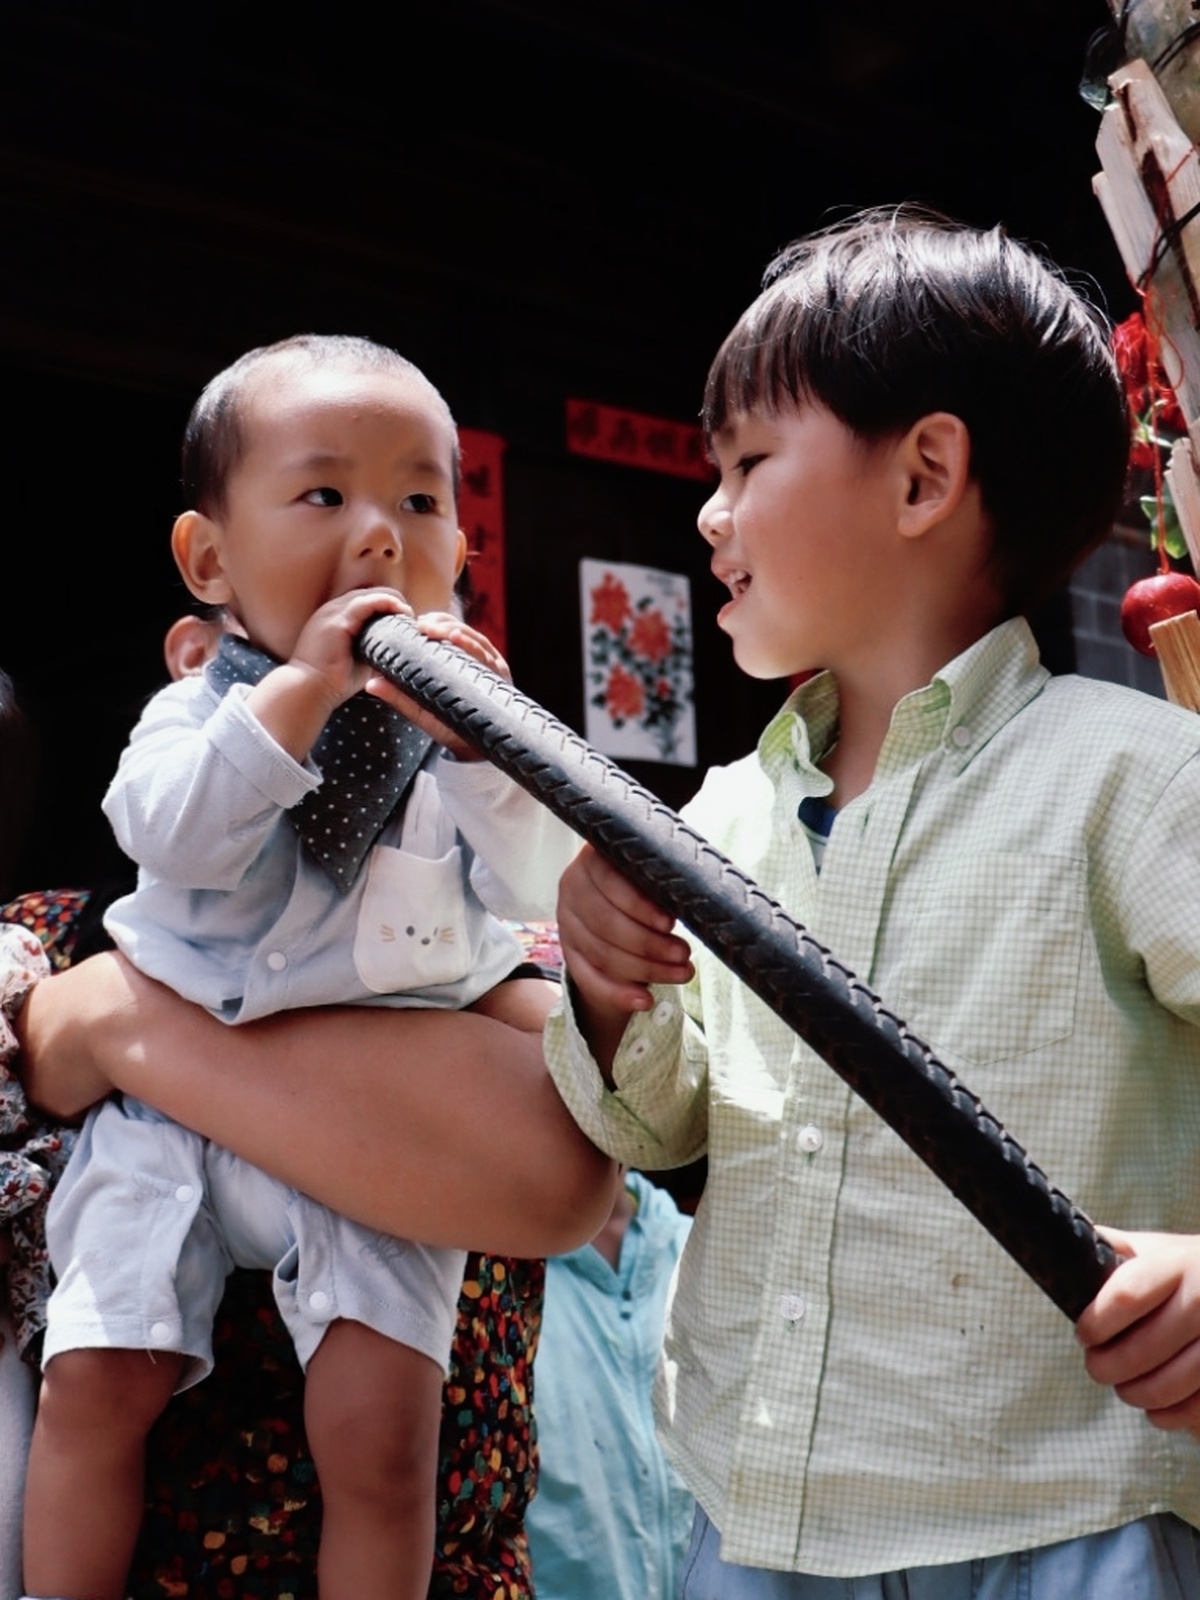 一个戴领带、嘴上拿着棒球棒的年轻人旁边站着一个拿着麦克风的小孩子。